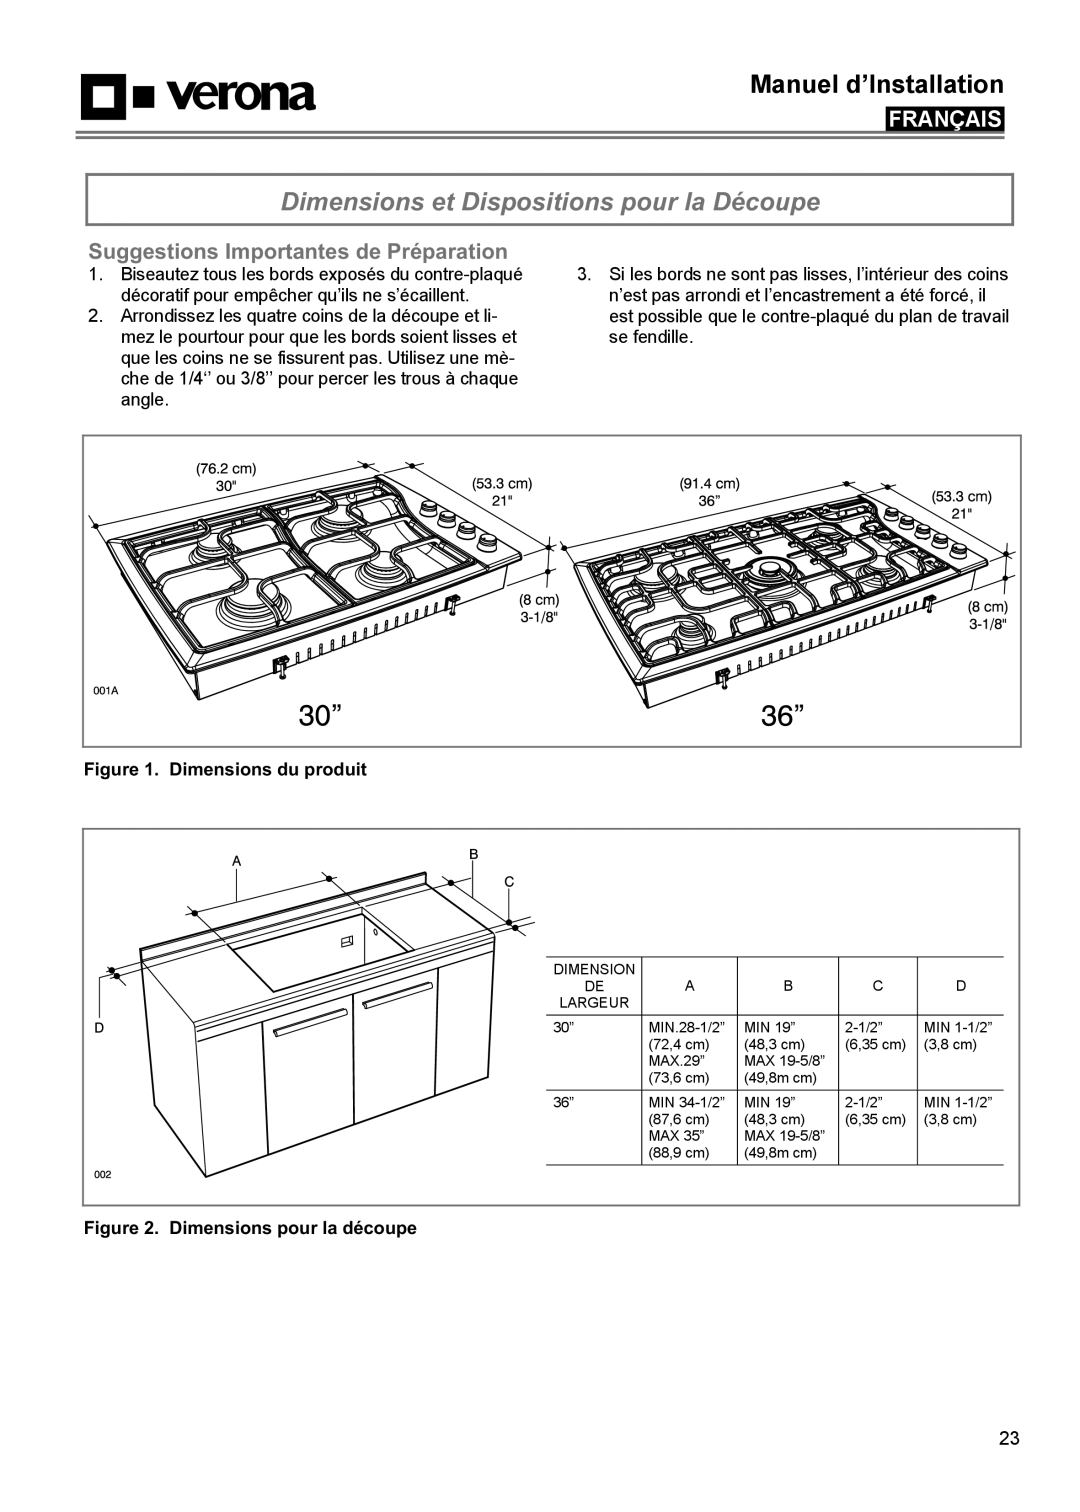 Verona VECTGMS304SS manual Dimensions et Dispositions pour la Découpe, Suggestions Importantes de Préparation, Français 